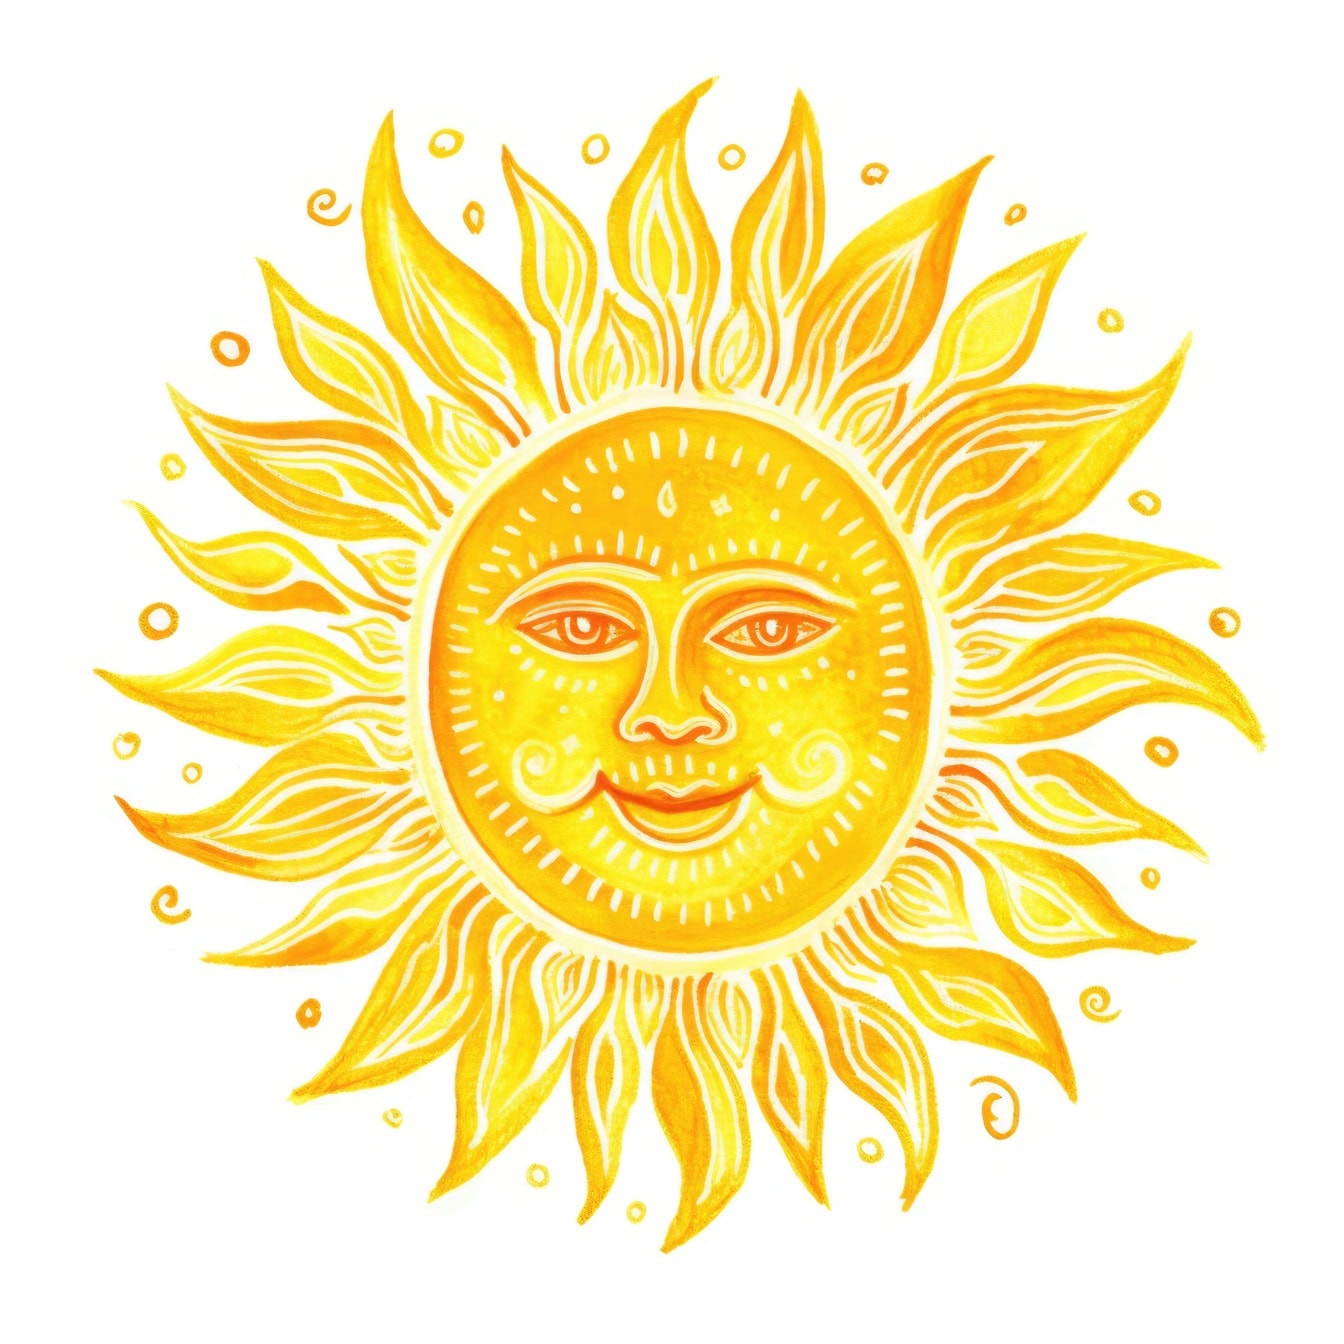 Grafica di un sole giallo con una faccia sorridente disegnata su sfondo bianco